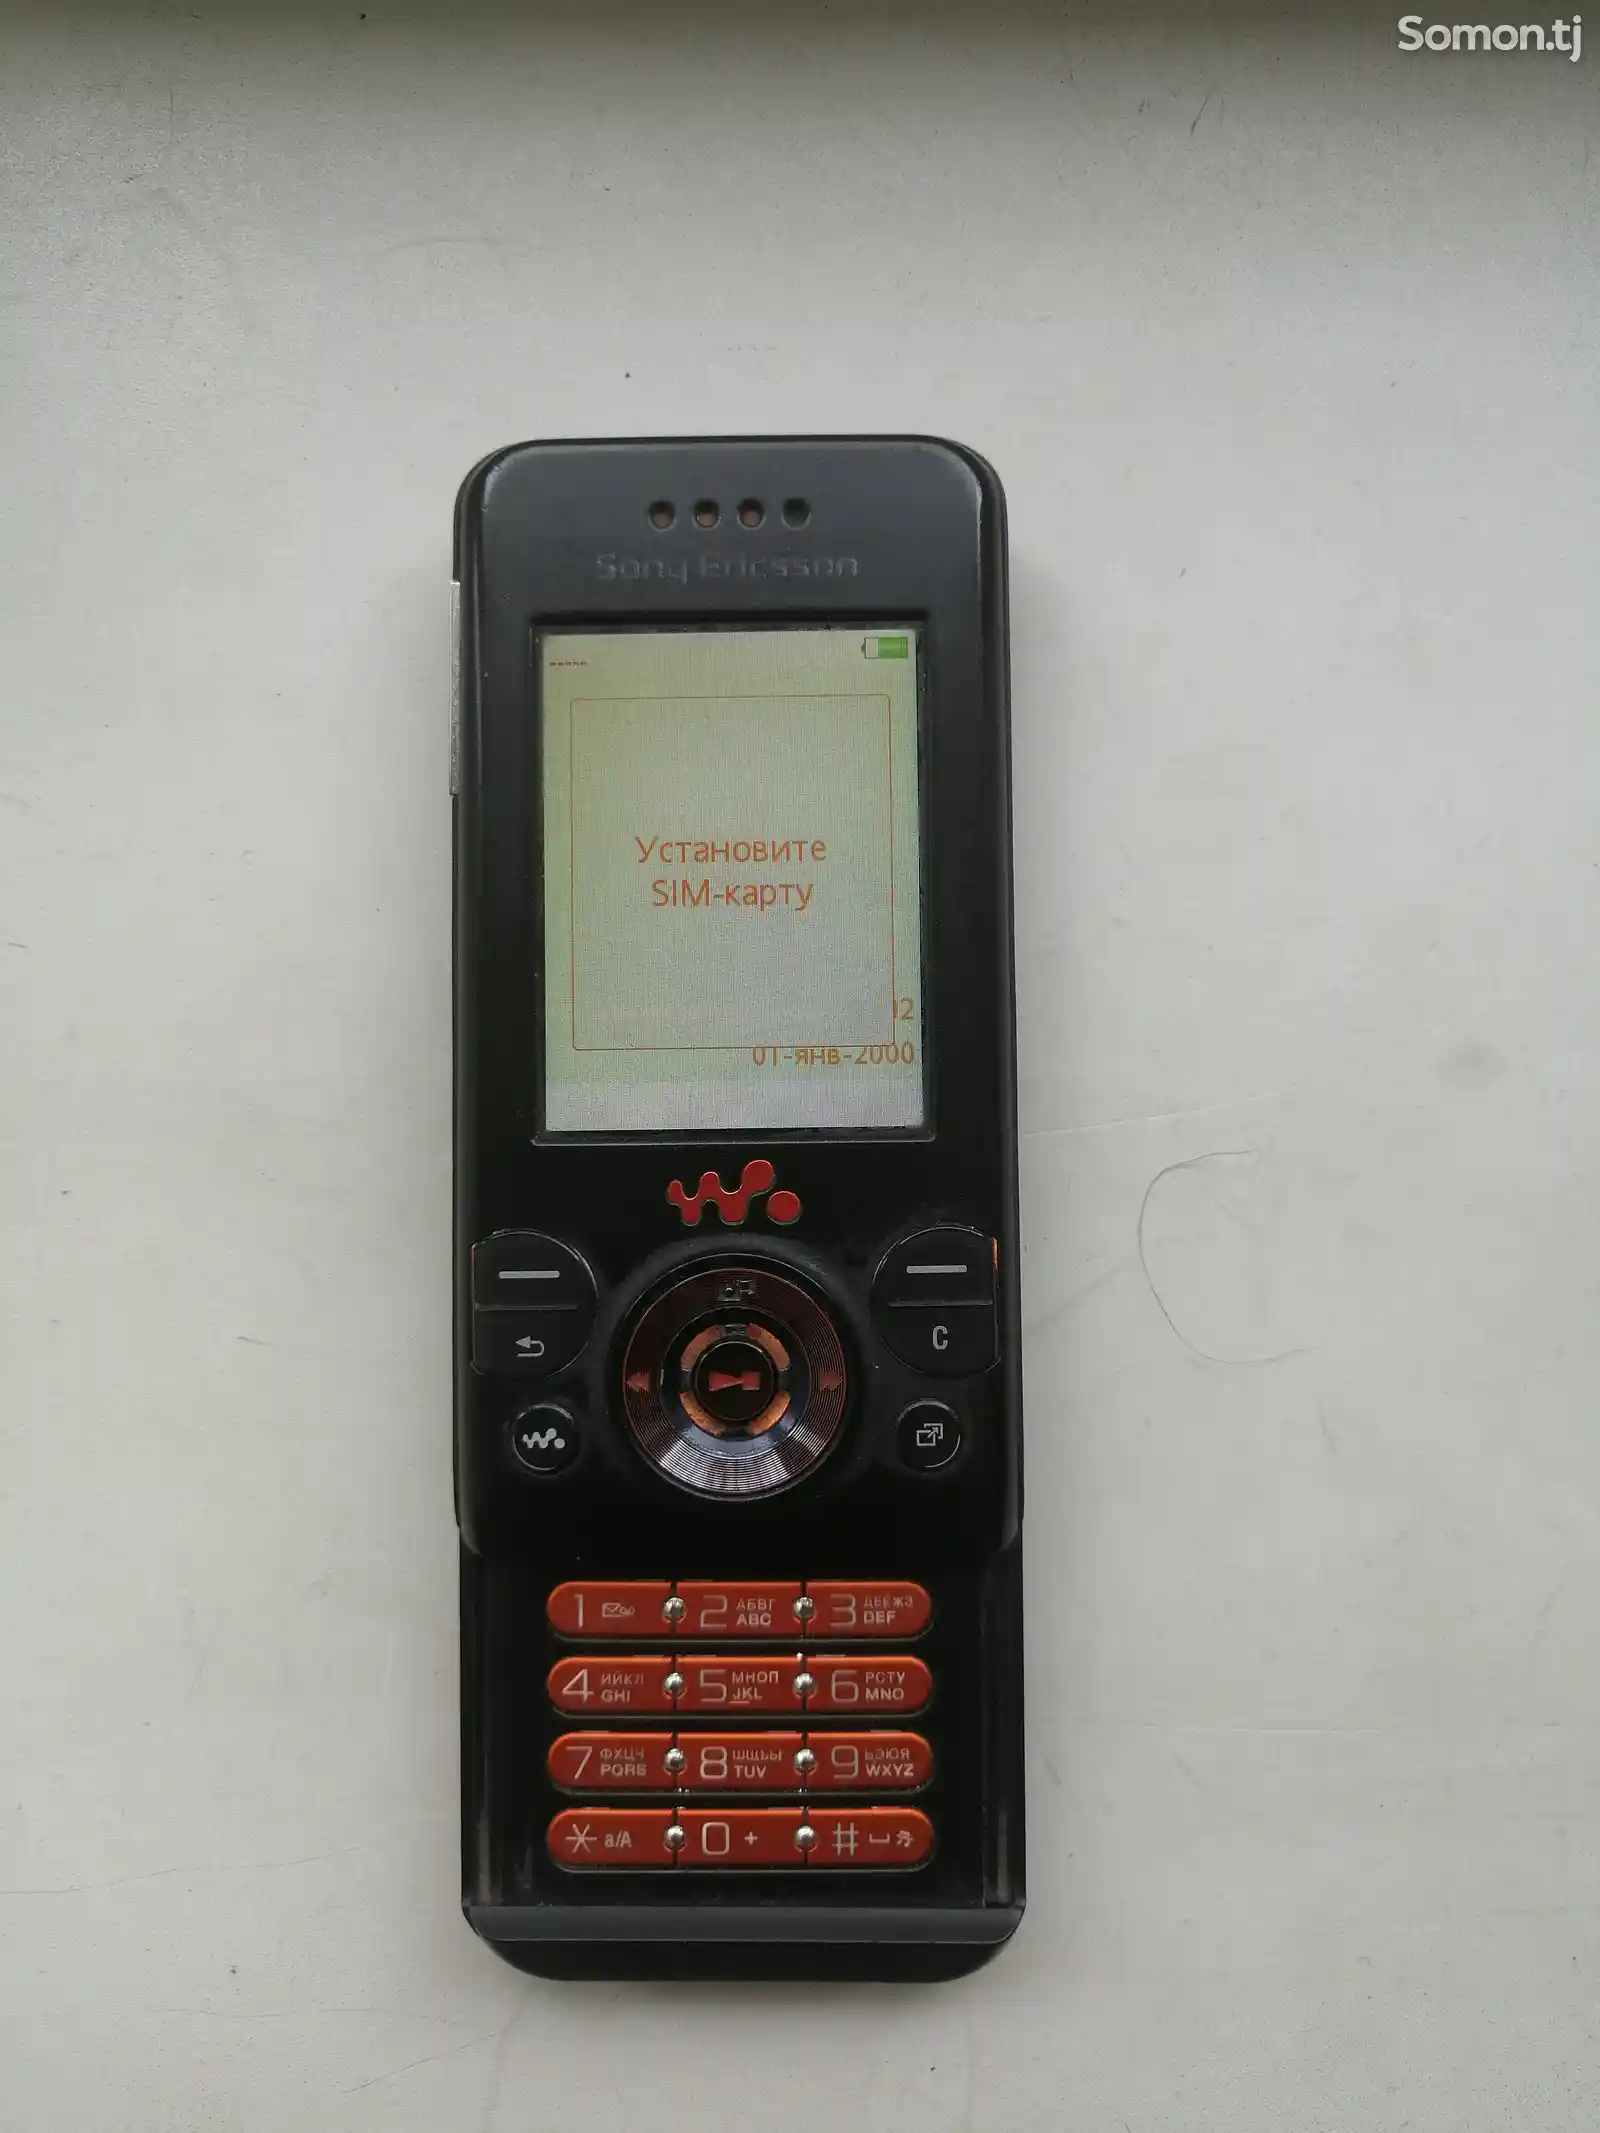 Sony Ericsson W580i-1